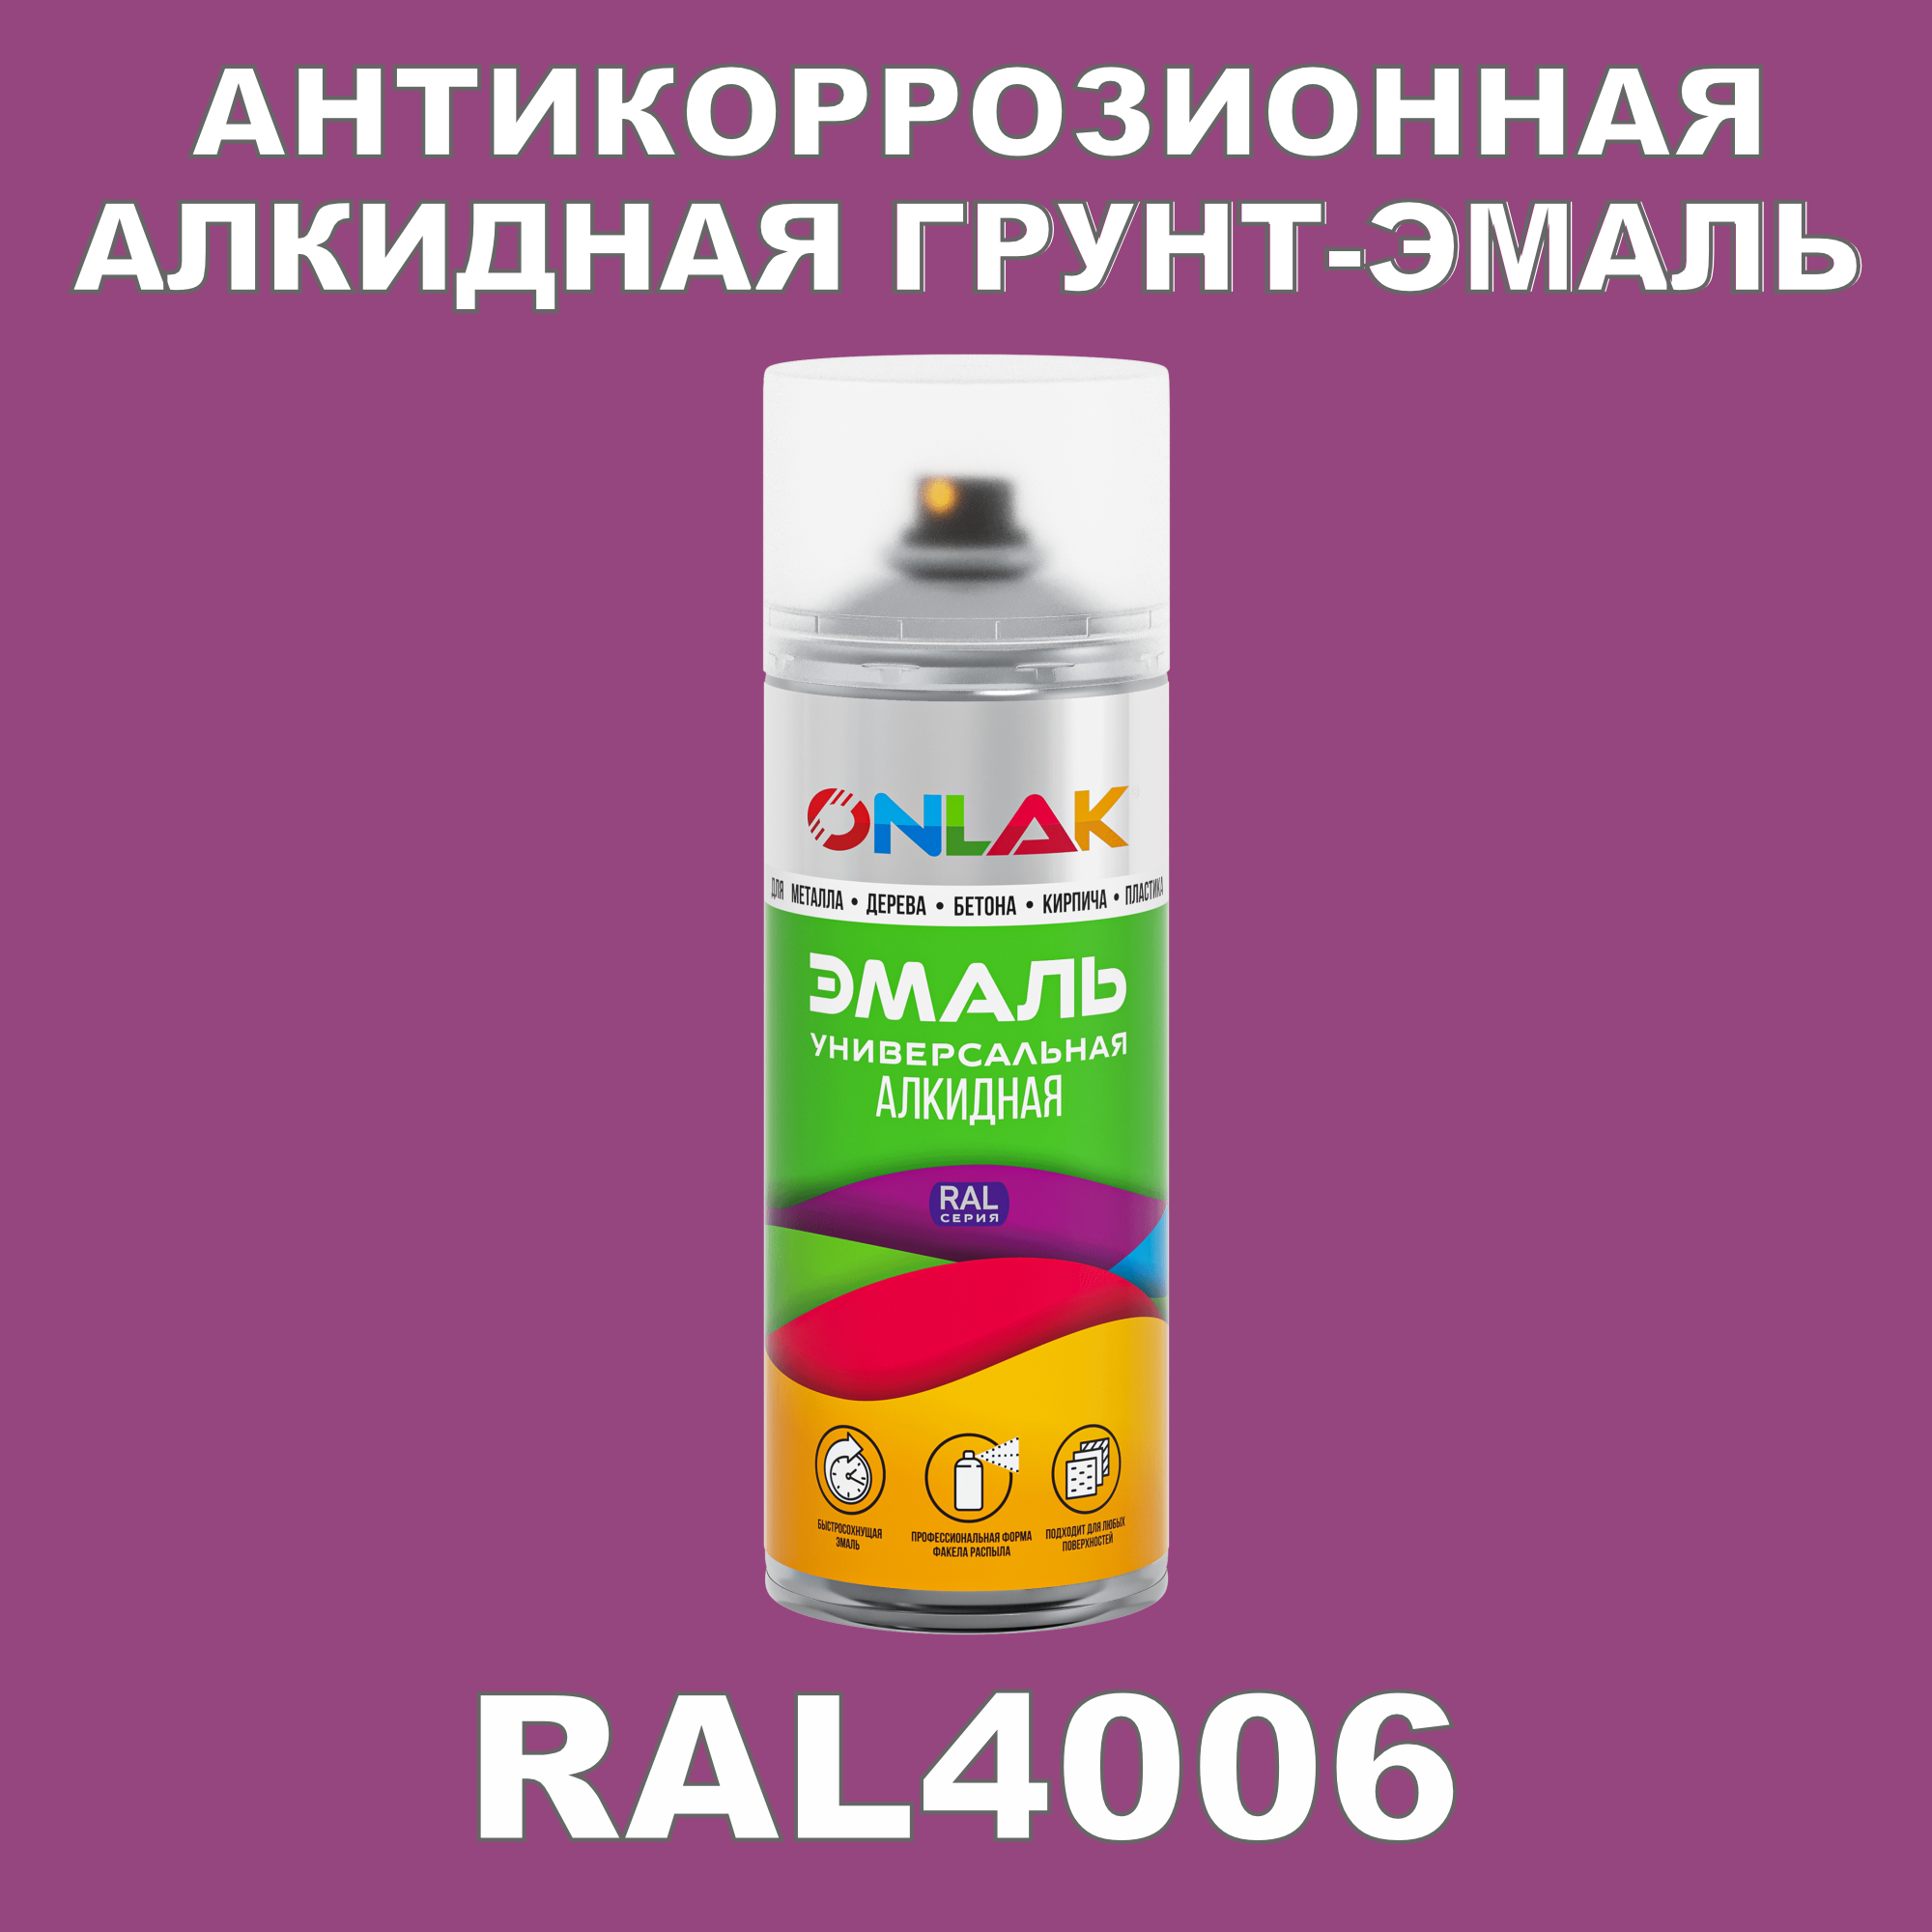 Антикоррозионная грунт-эмаль ONLAK RAL 4006,фиолетовый,682 мл artuniq color violet ной грунт для аквариума фиолетовый 3 кг